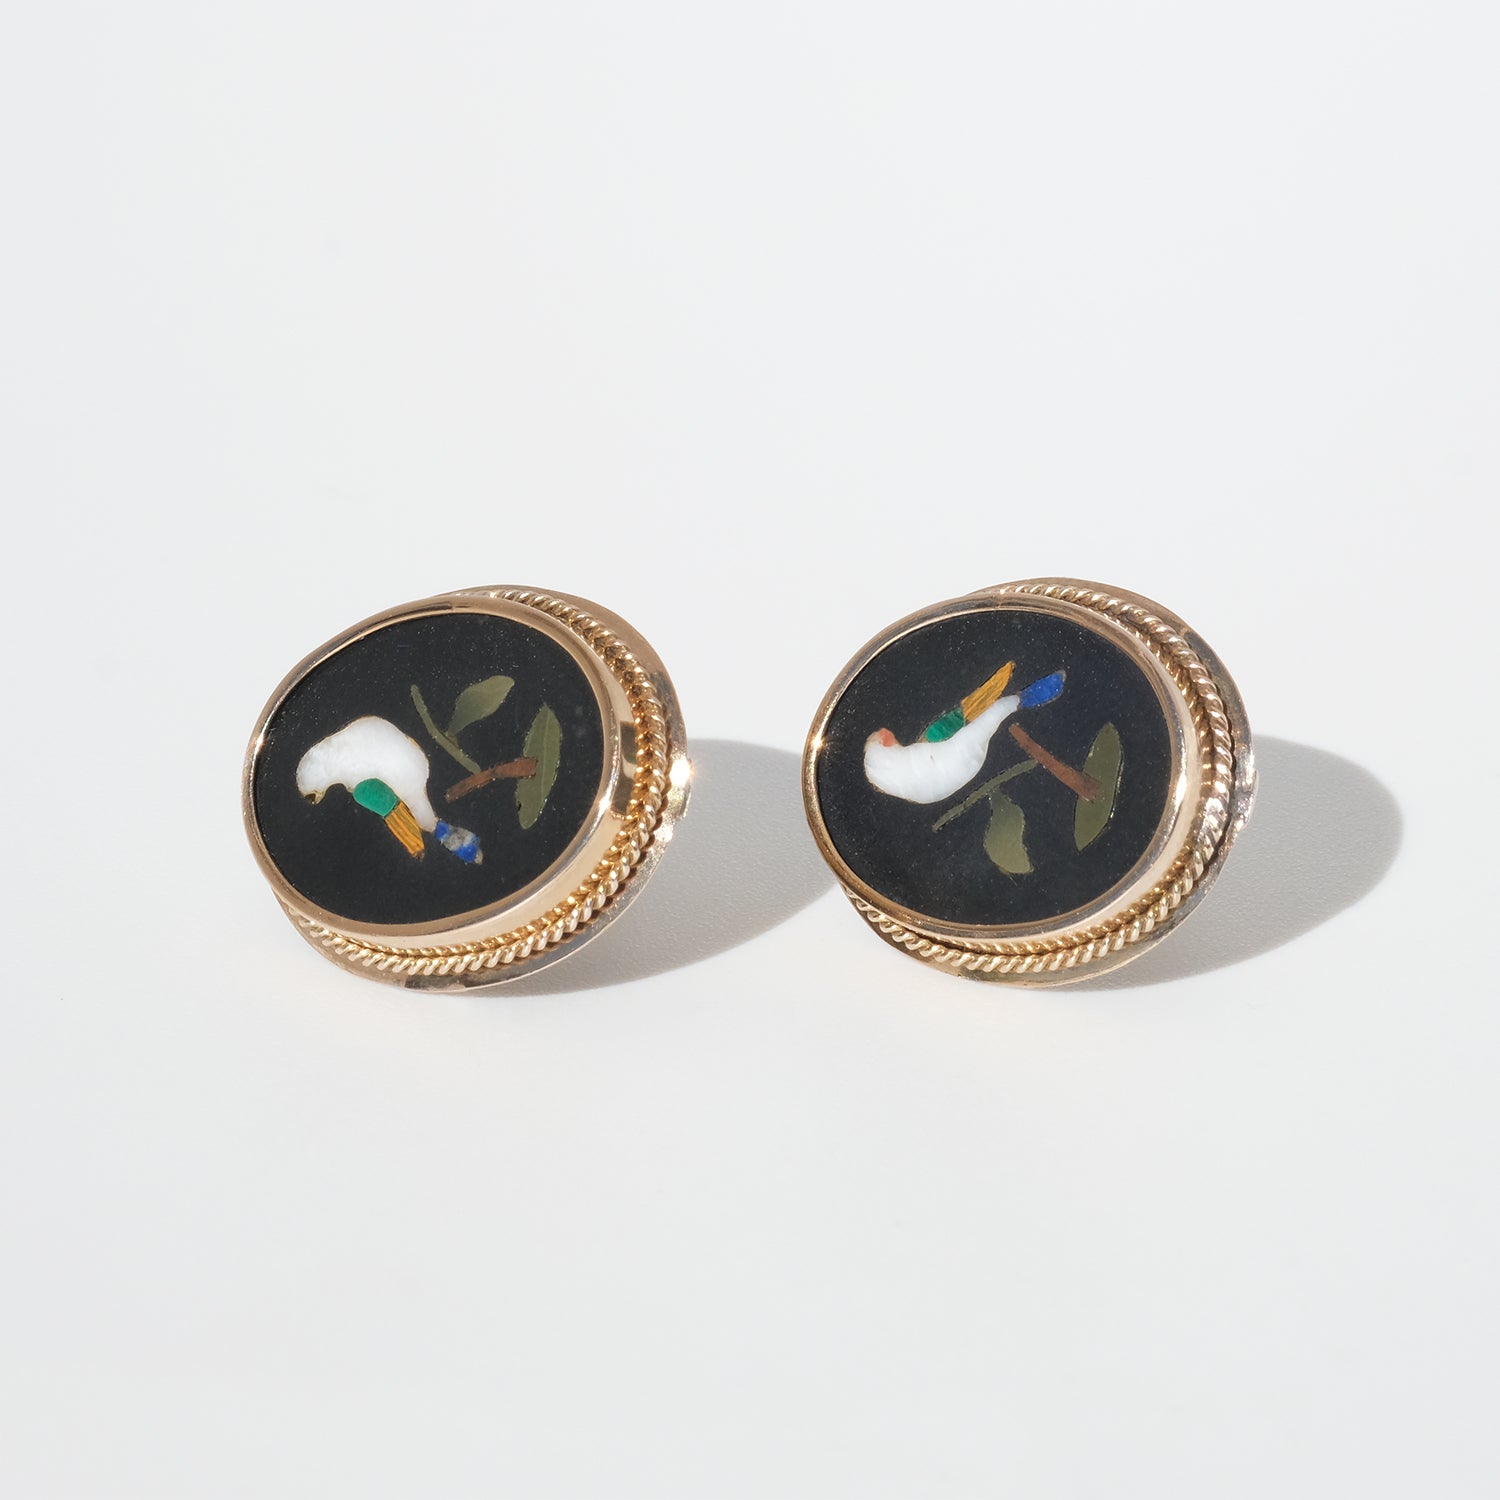 Diese Ohrringe sind mit der dekorativen Technik Pietra Dura, minderwertigem Gold und Silber hergestellt. Pietra Dura ist die Kunst des Steinmetzhandwerks, und in diesem Fall zeigen die dekorativen Steinstücke schöne Vögel in den Farben Weiß, Grün,